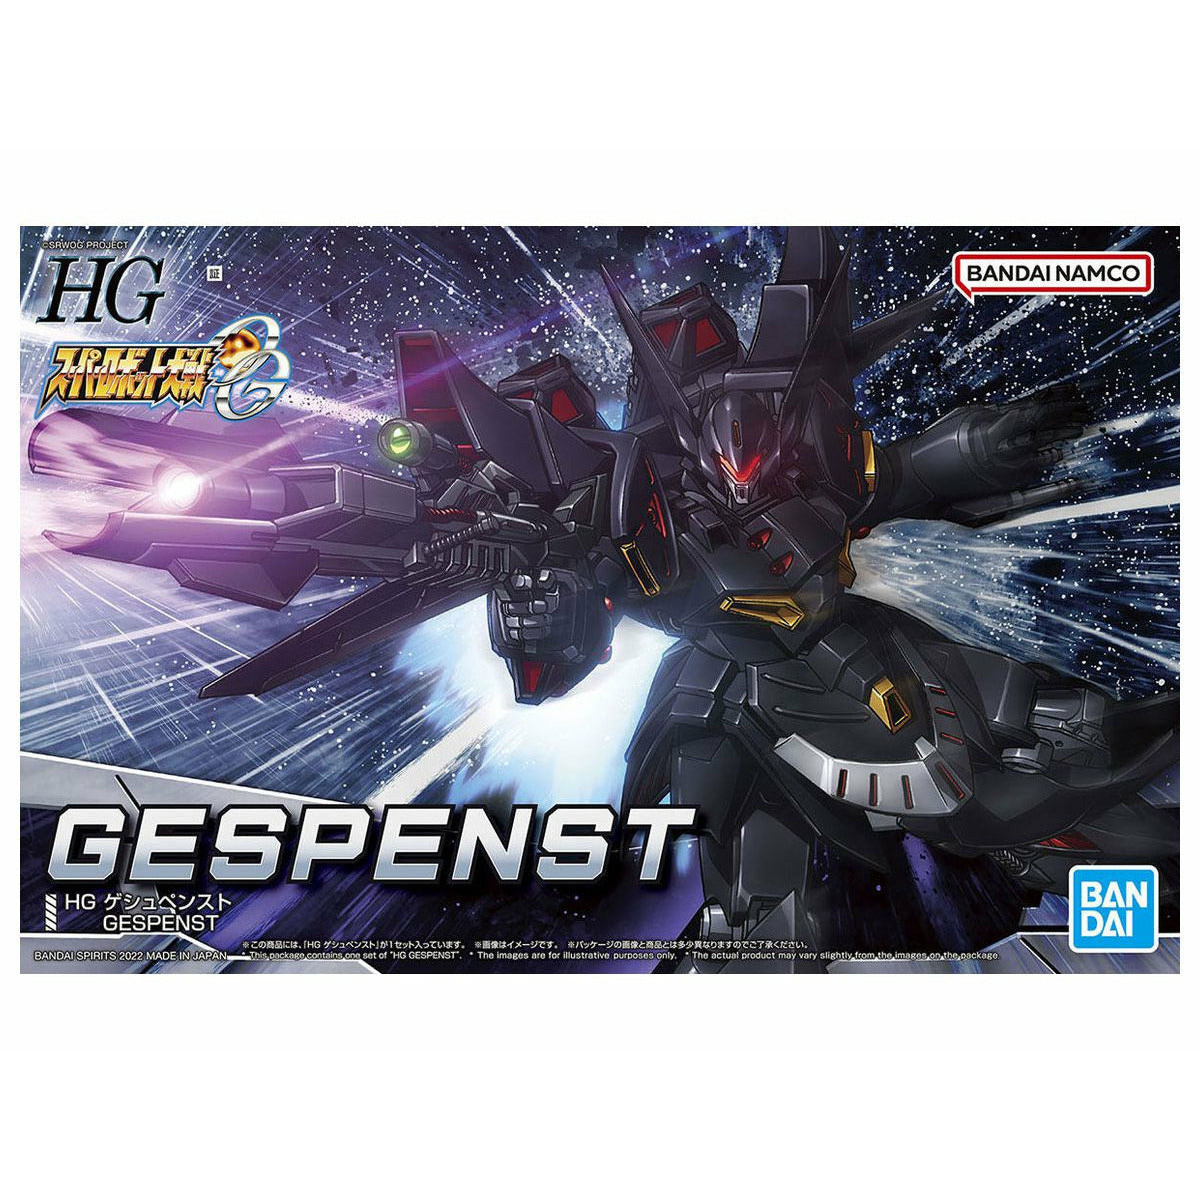 HG Gepenst #5063350 Super Robot Wars Model Kit by Bandai